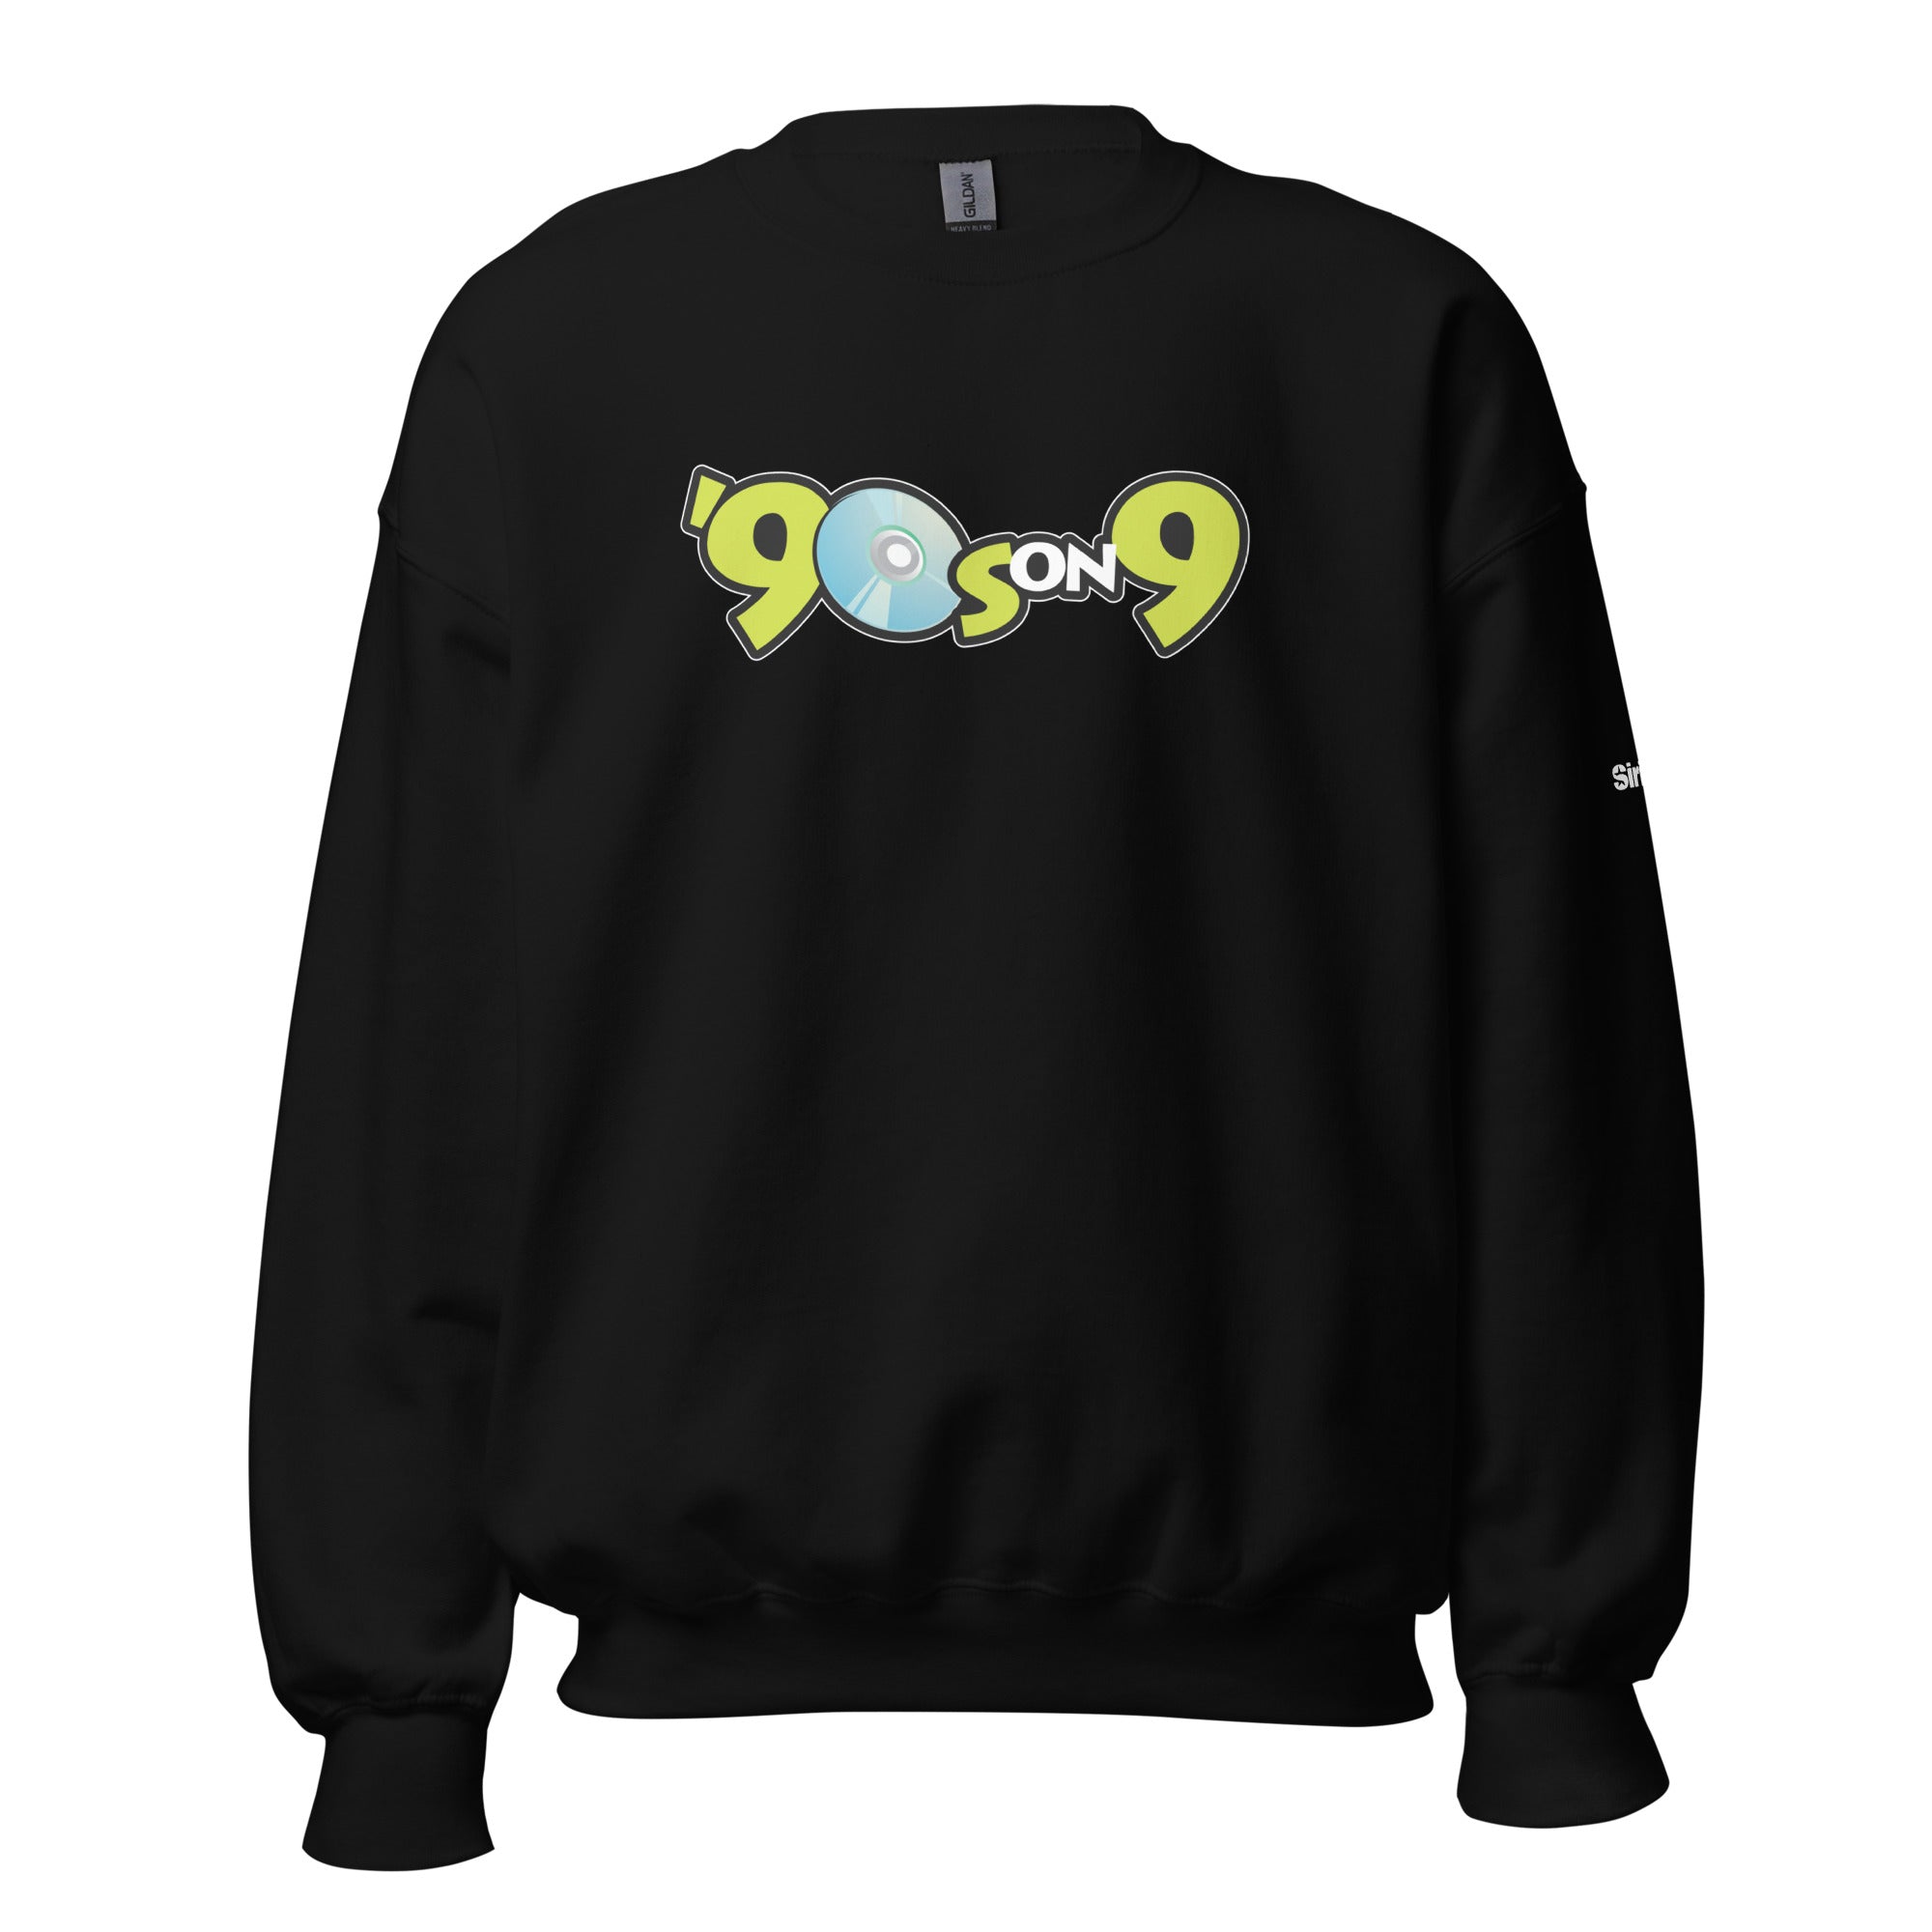 90s on 9: Sweatshirt (Black)